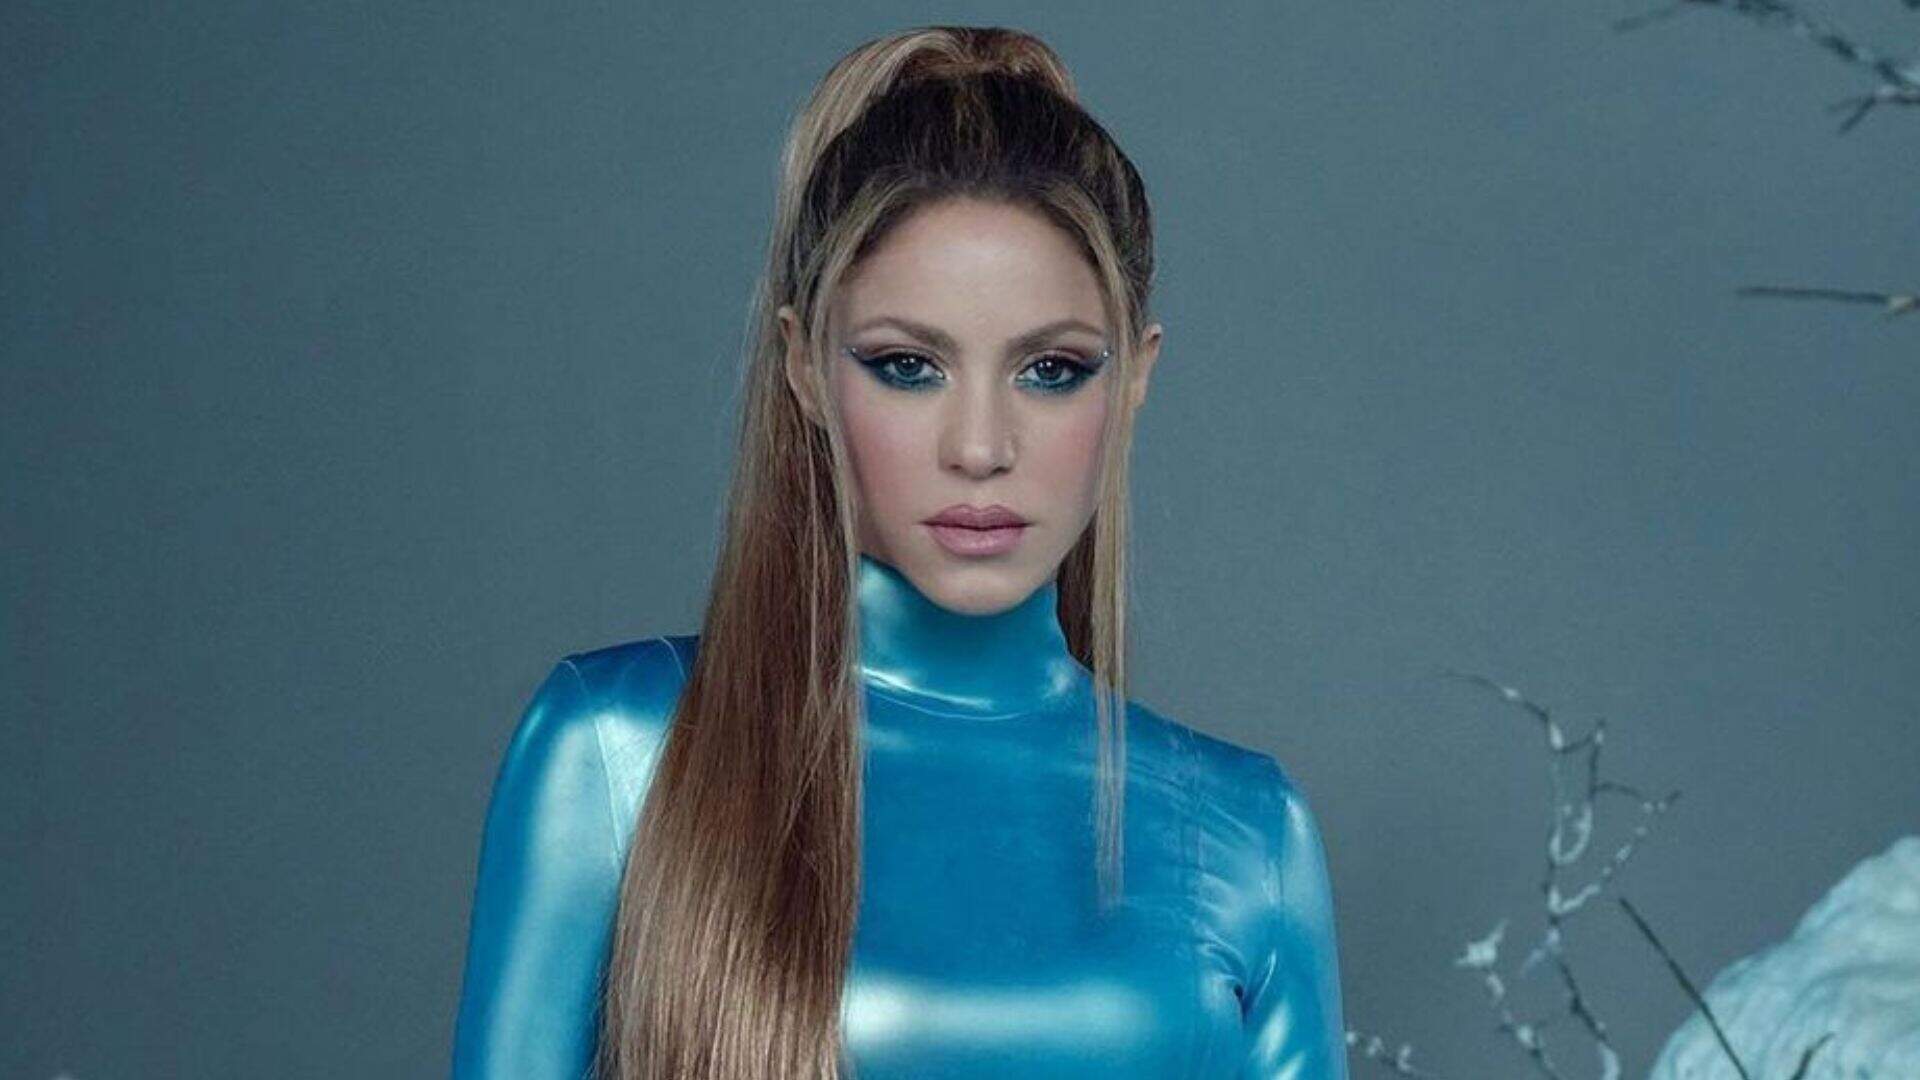 Shakira dá primeira entrevista após divórcio: “Nem todos os sonhos se realizam” - Metropolitana FM